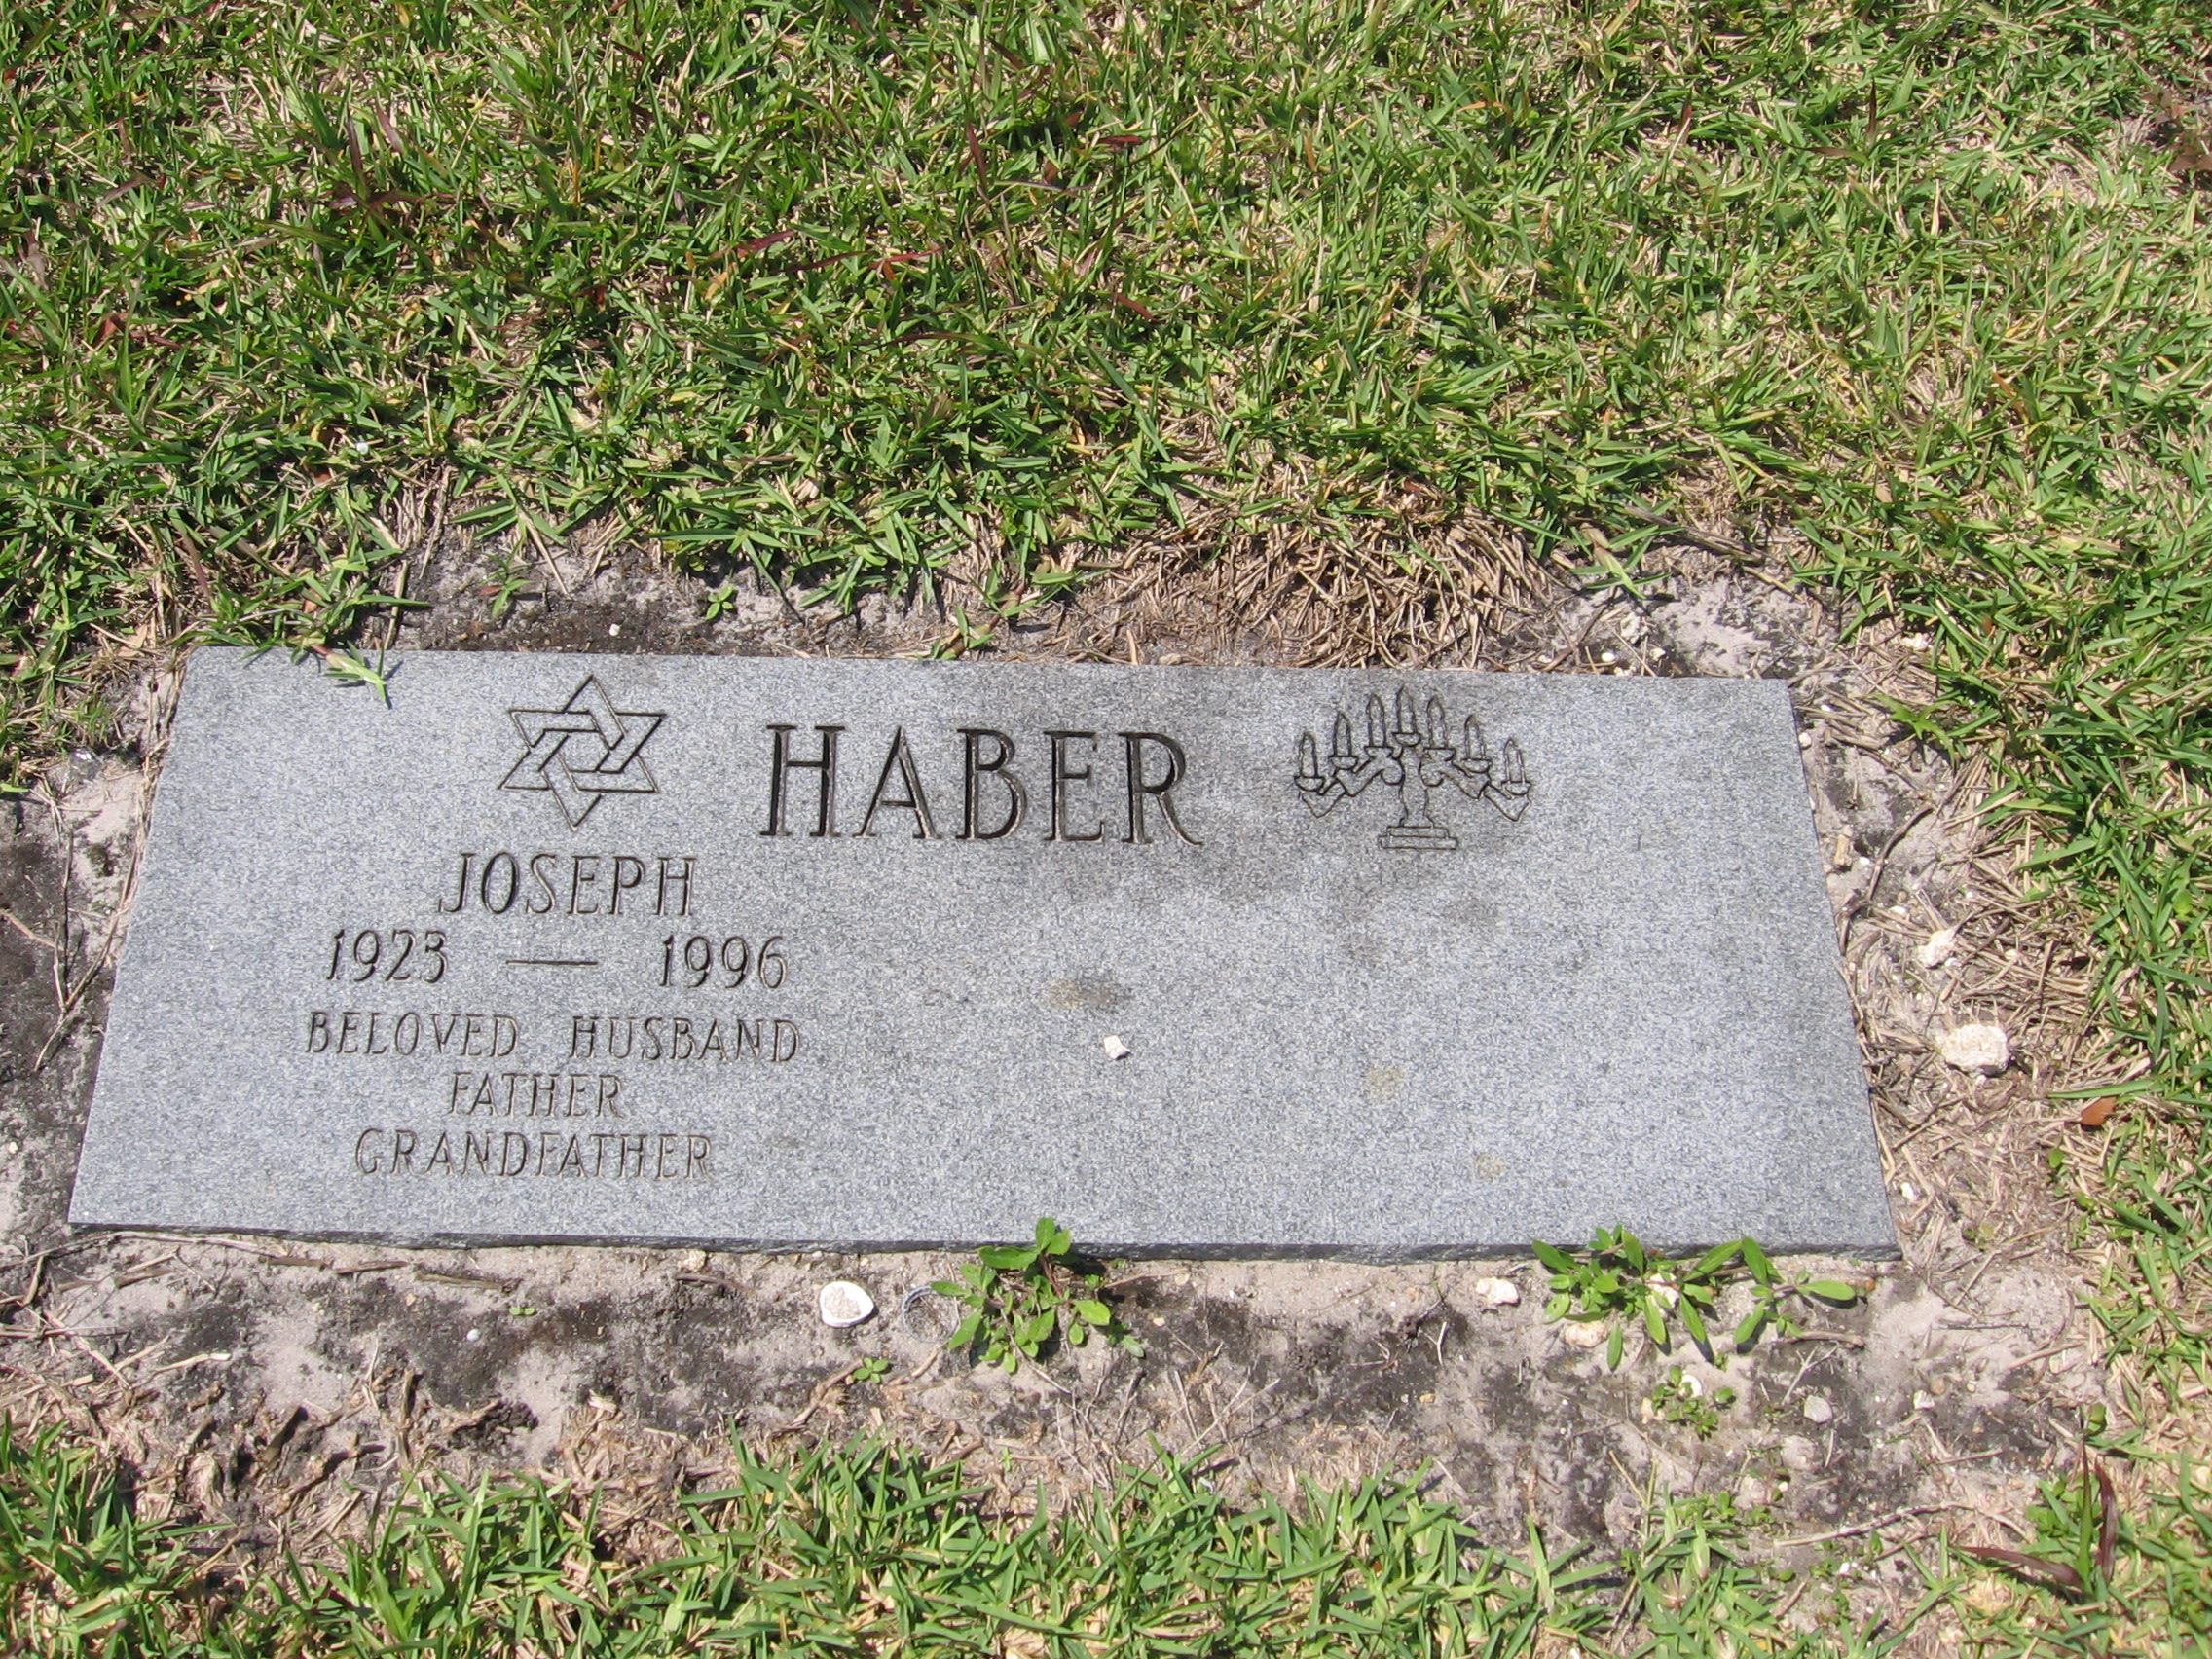 Joseph Haber